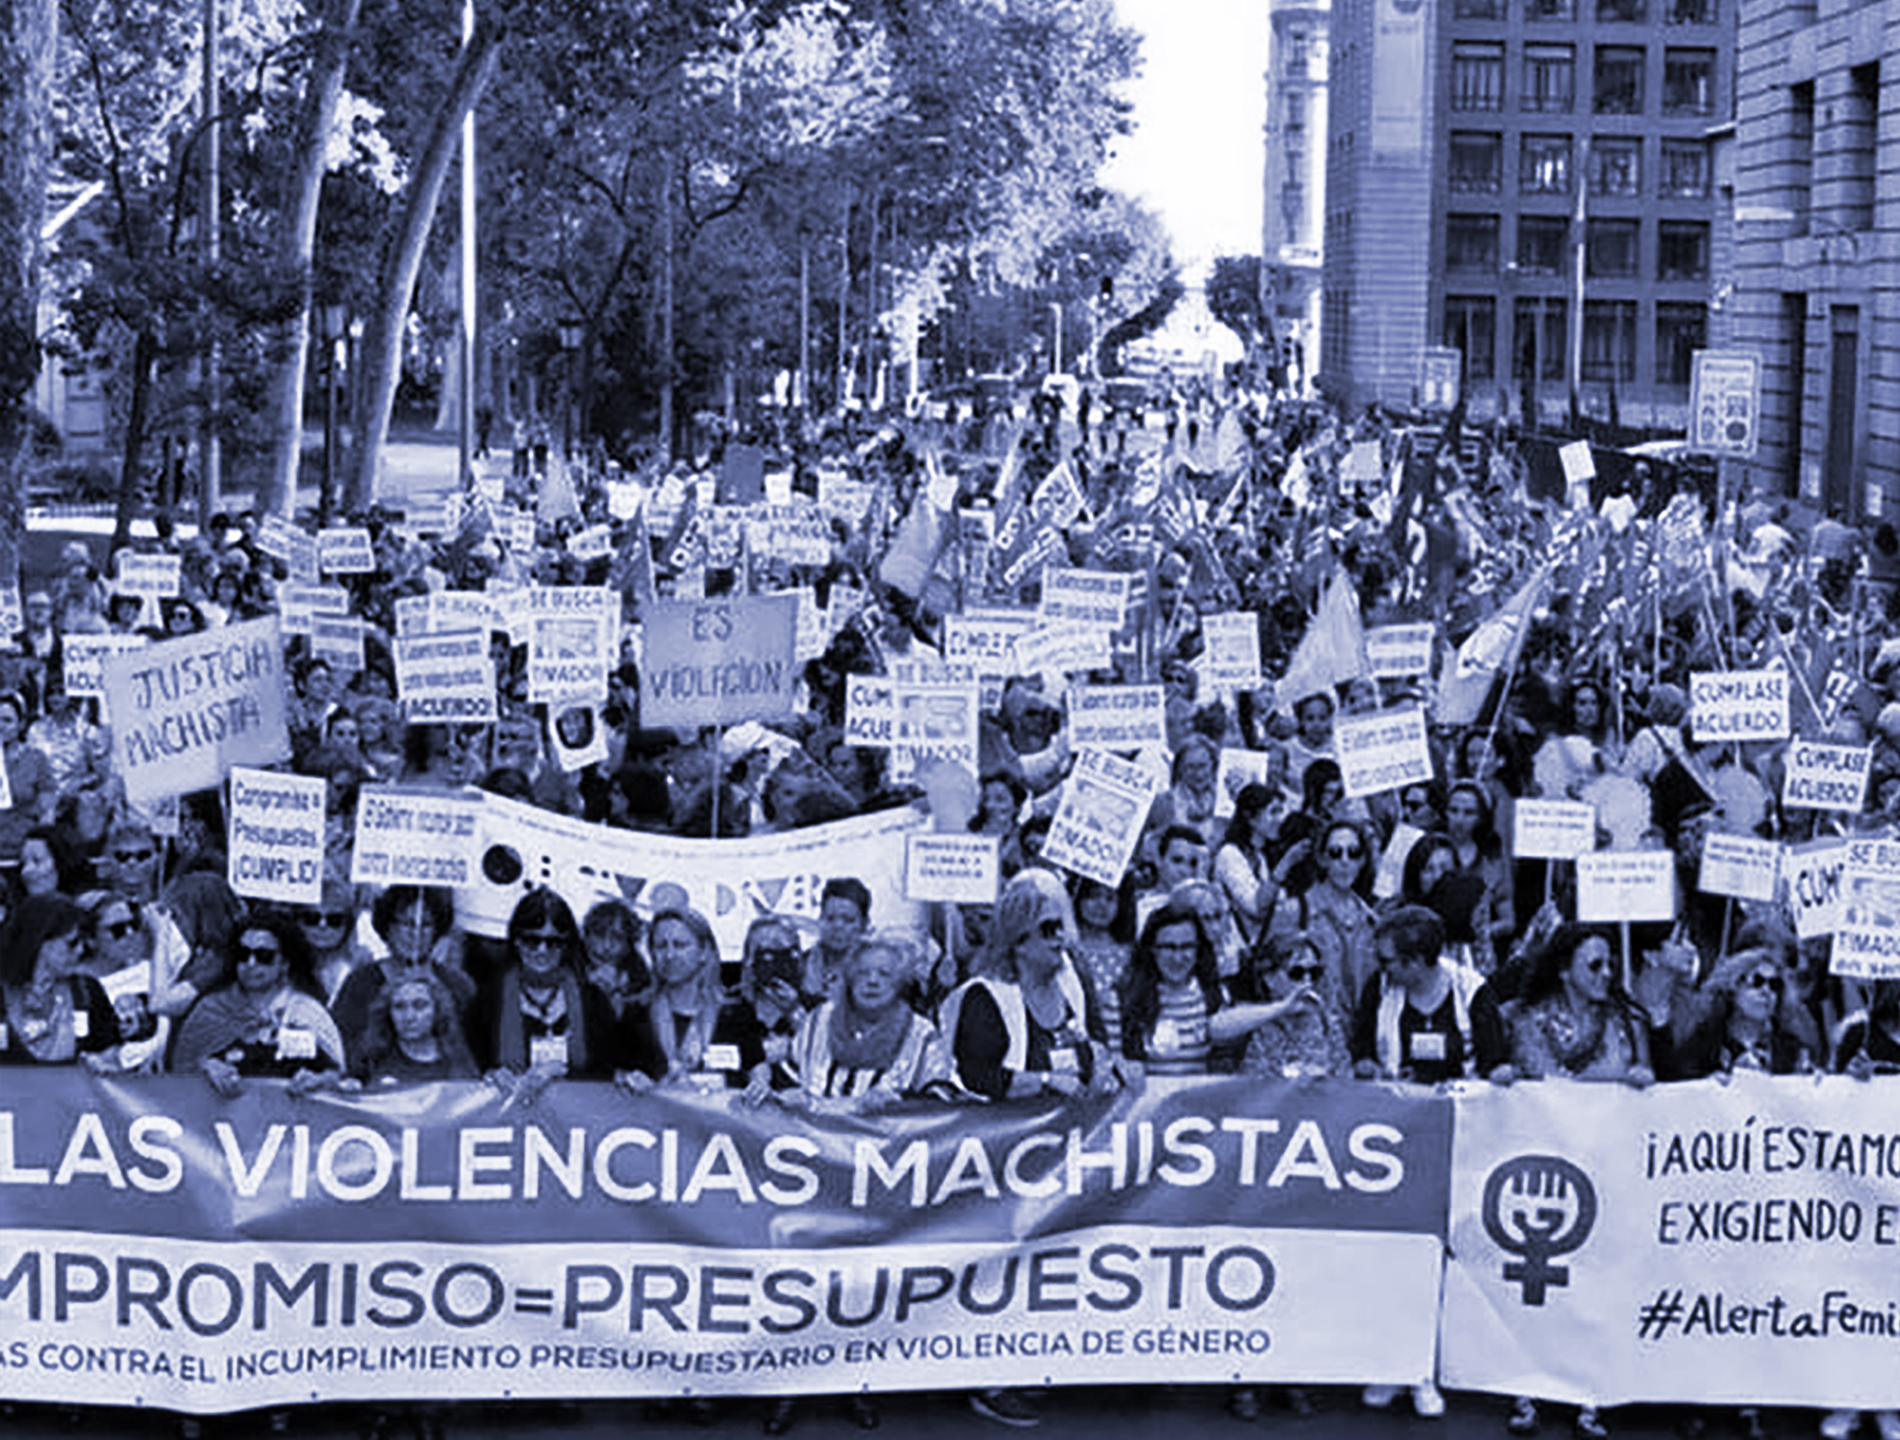 Manifestación contra la violencia machista. Madrid, 2018.